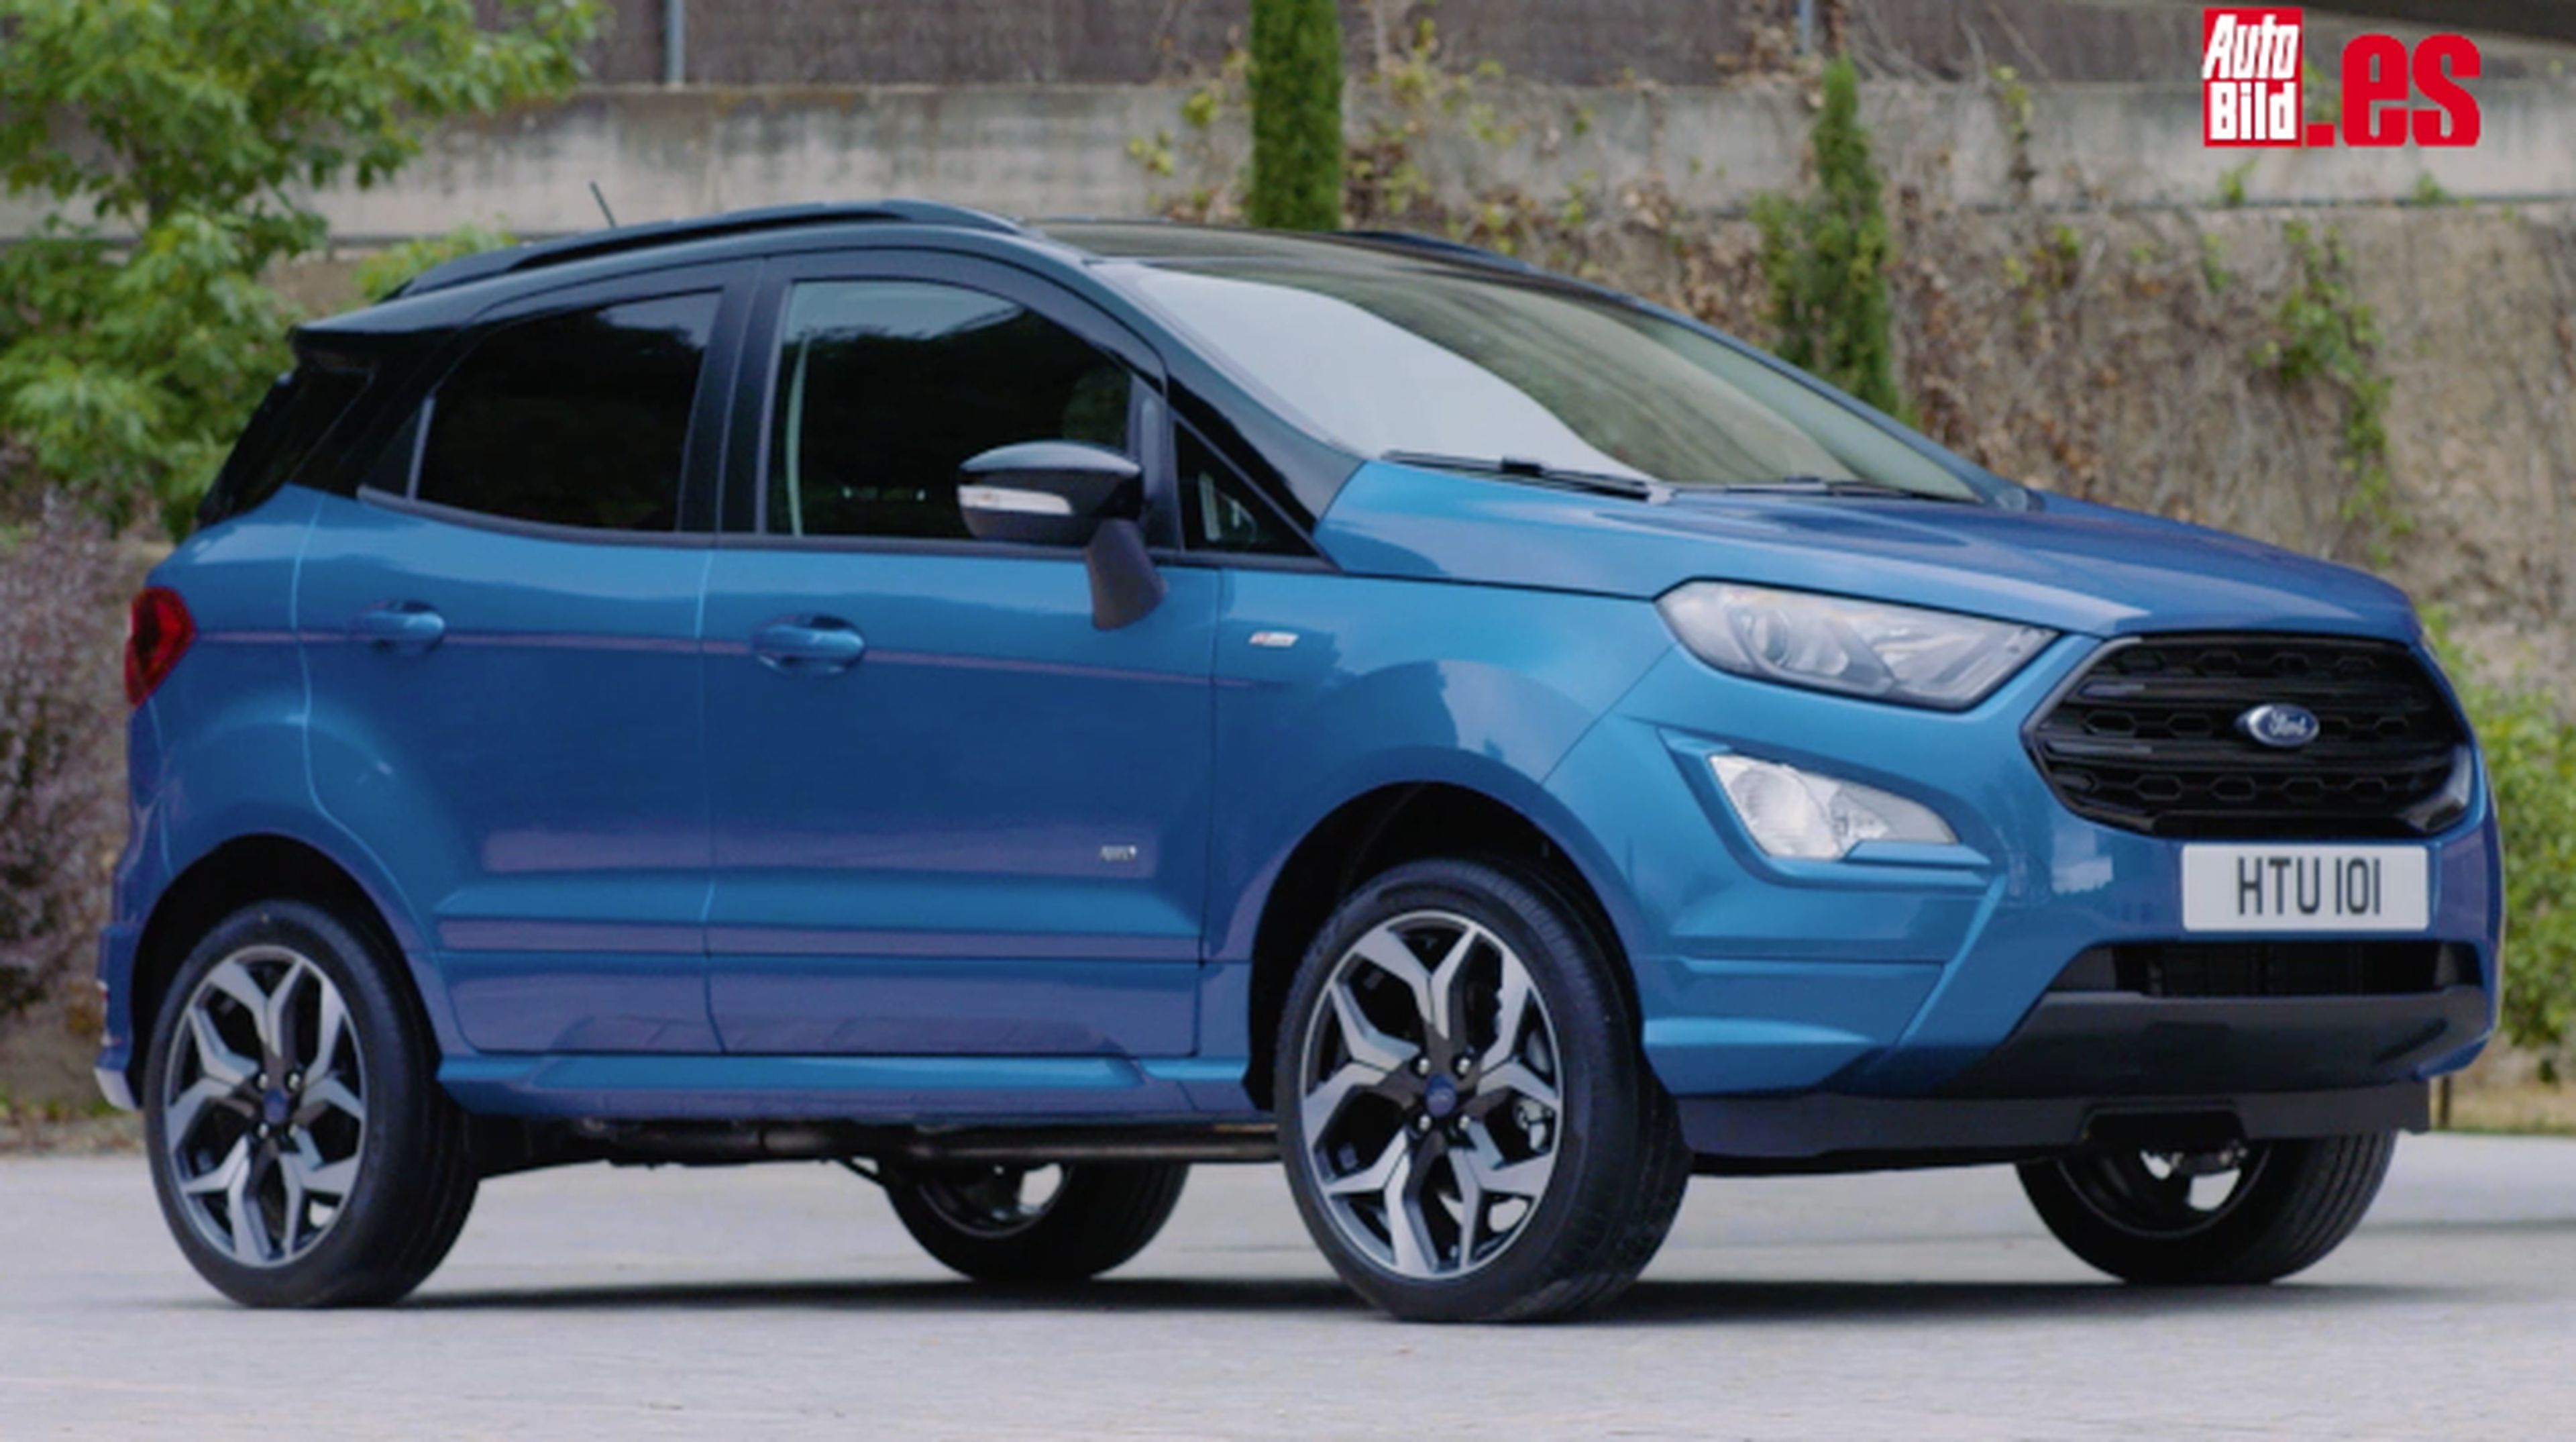 Vídeo: Prueba Ford Ecosport